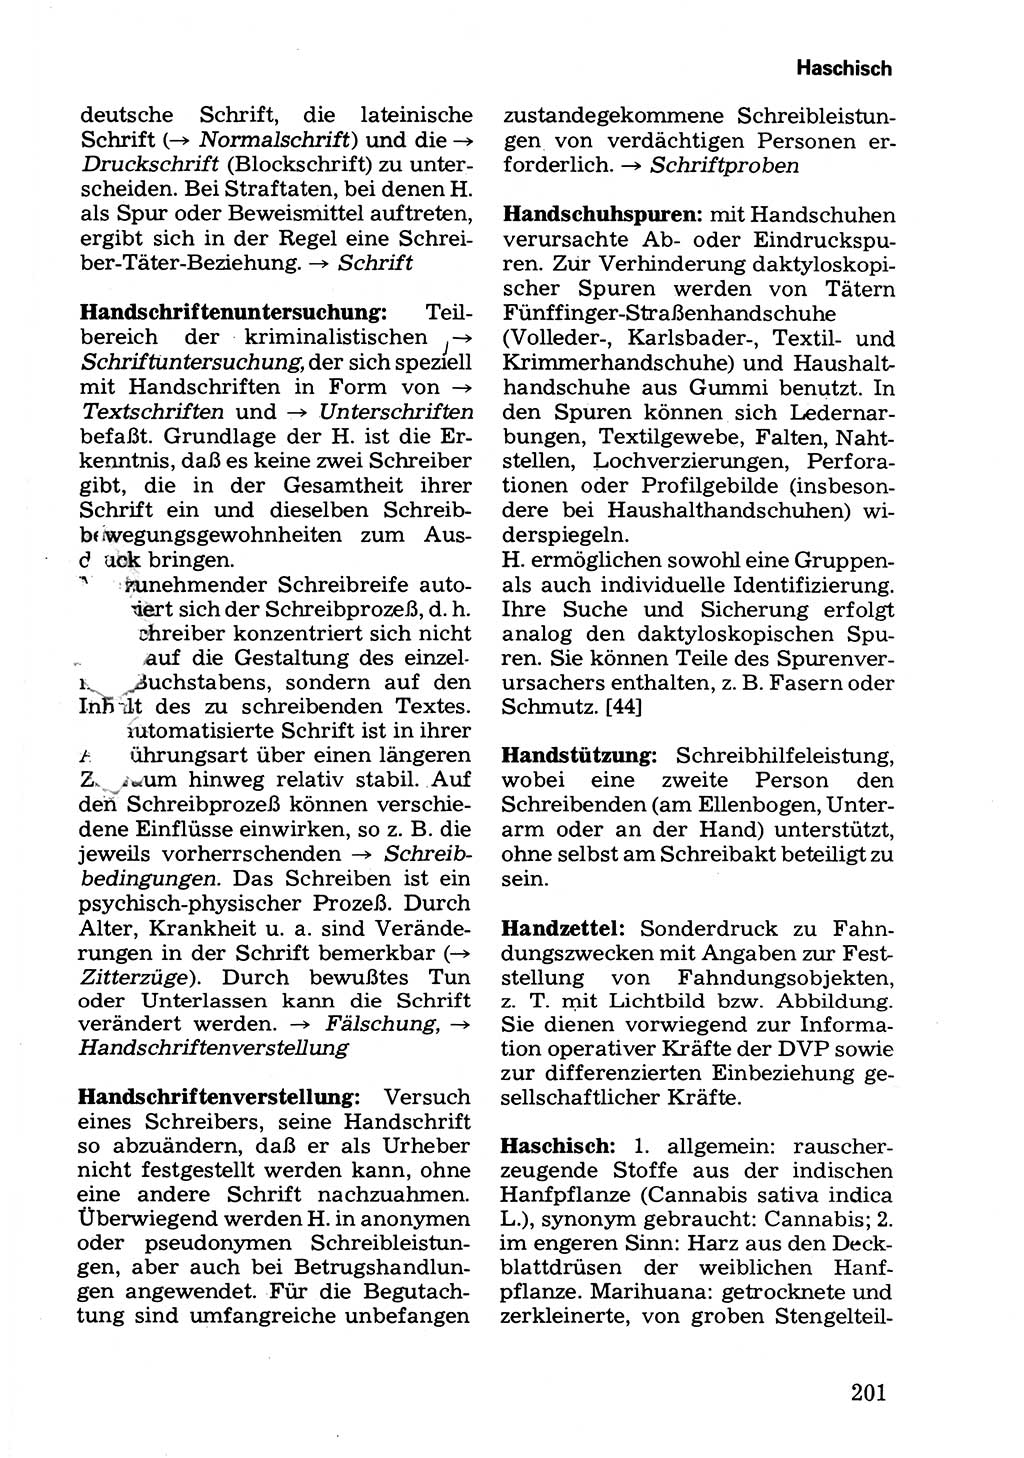 Wörterbuch der sozialistischen Kriminalistik [Deutsche Demokratische Republik (DDR)] 1981, Seite 201 (Wb. soz. Krim. DDR 1981, S. 201)